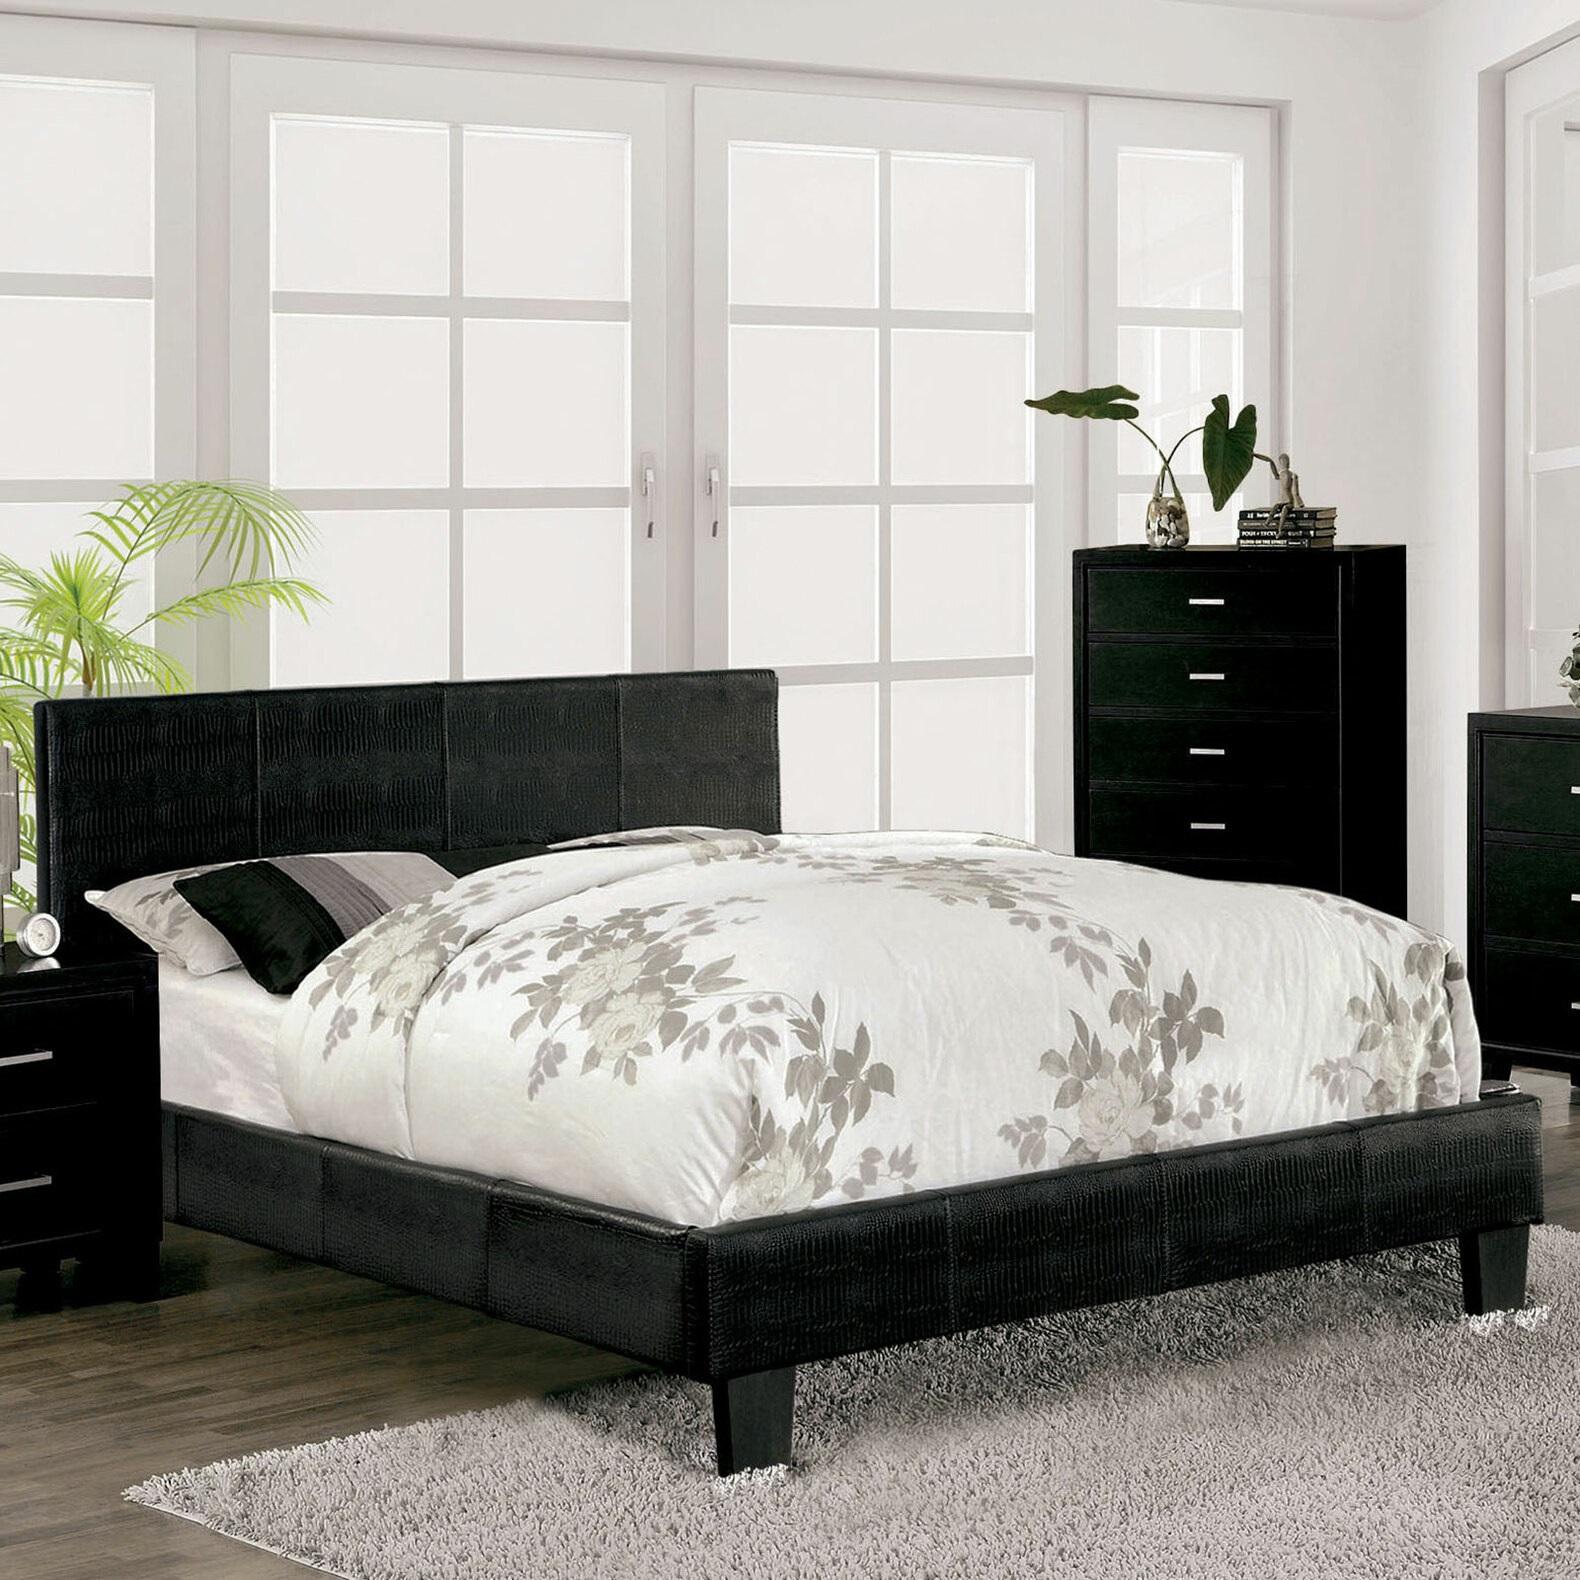 

    
Contemporary Black Solid Wood CAL Bedroom Set 6pcs Furniture of America CM7793BK-CK Wallen
